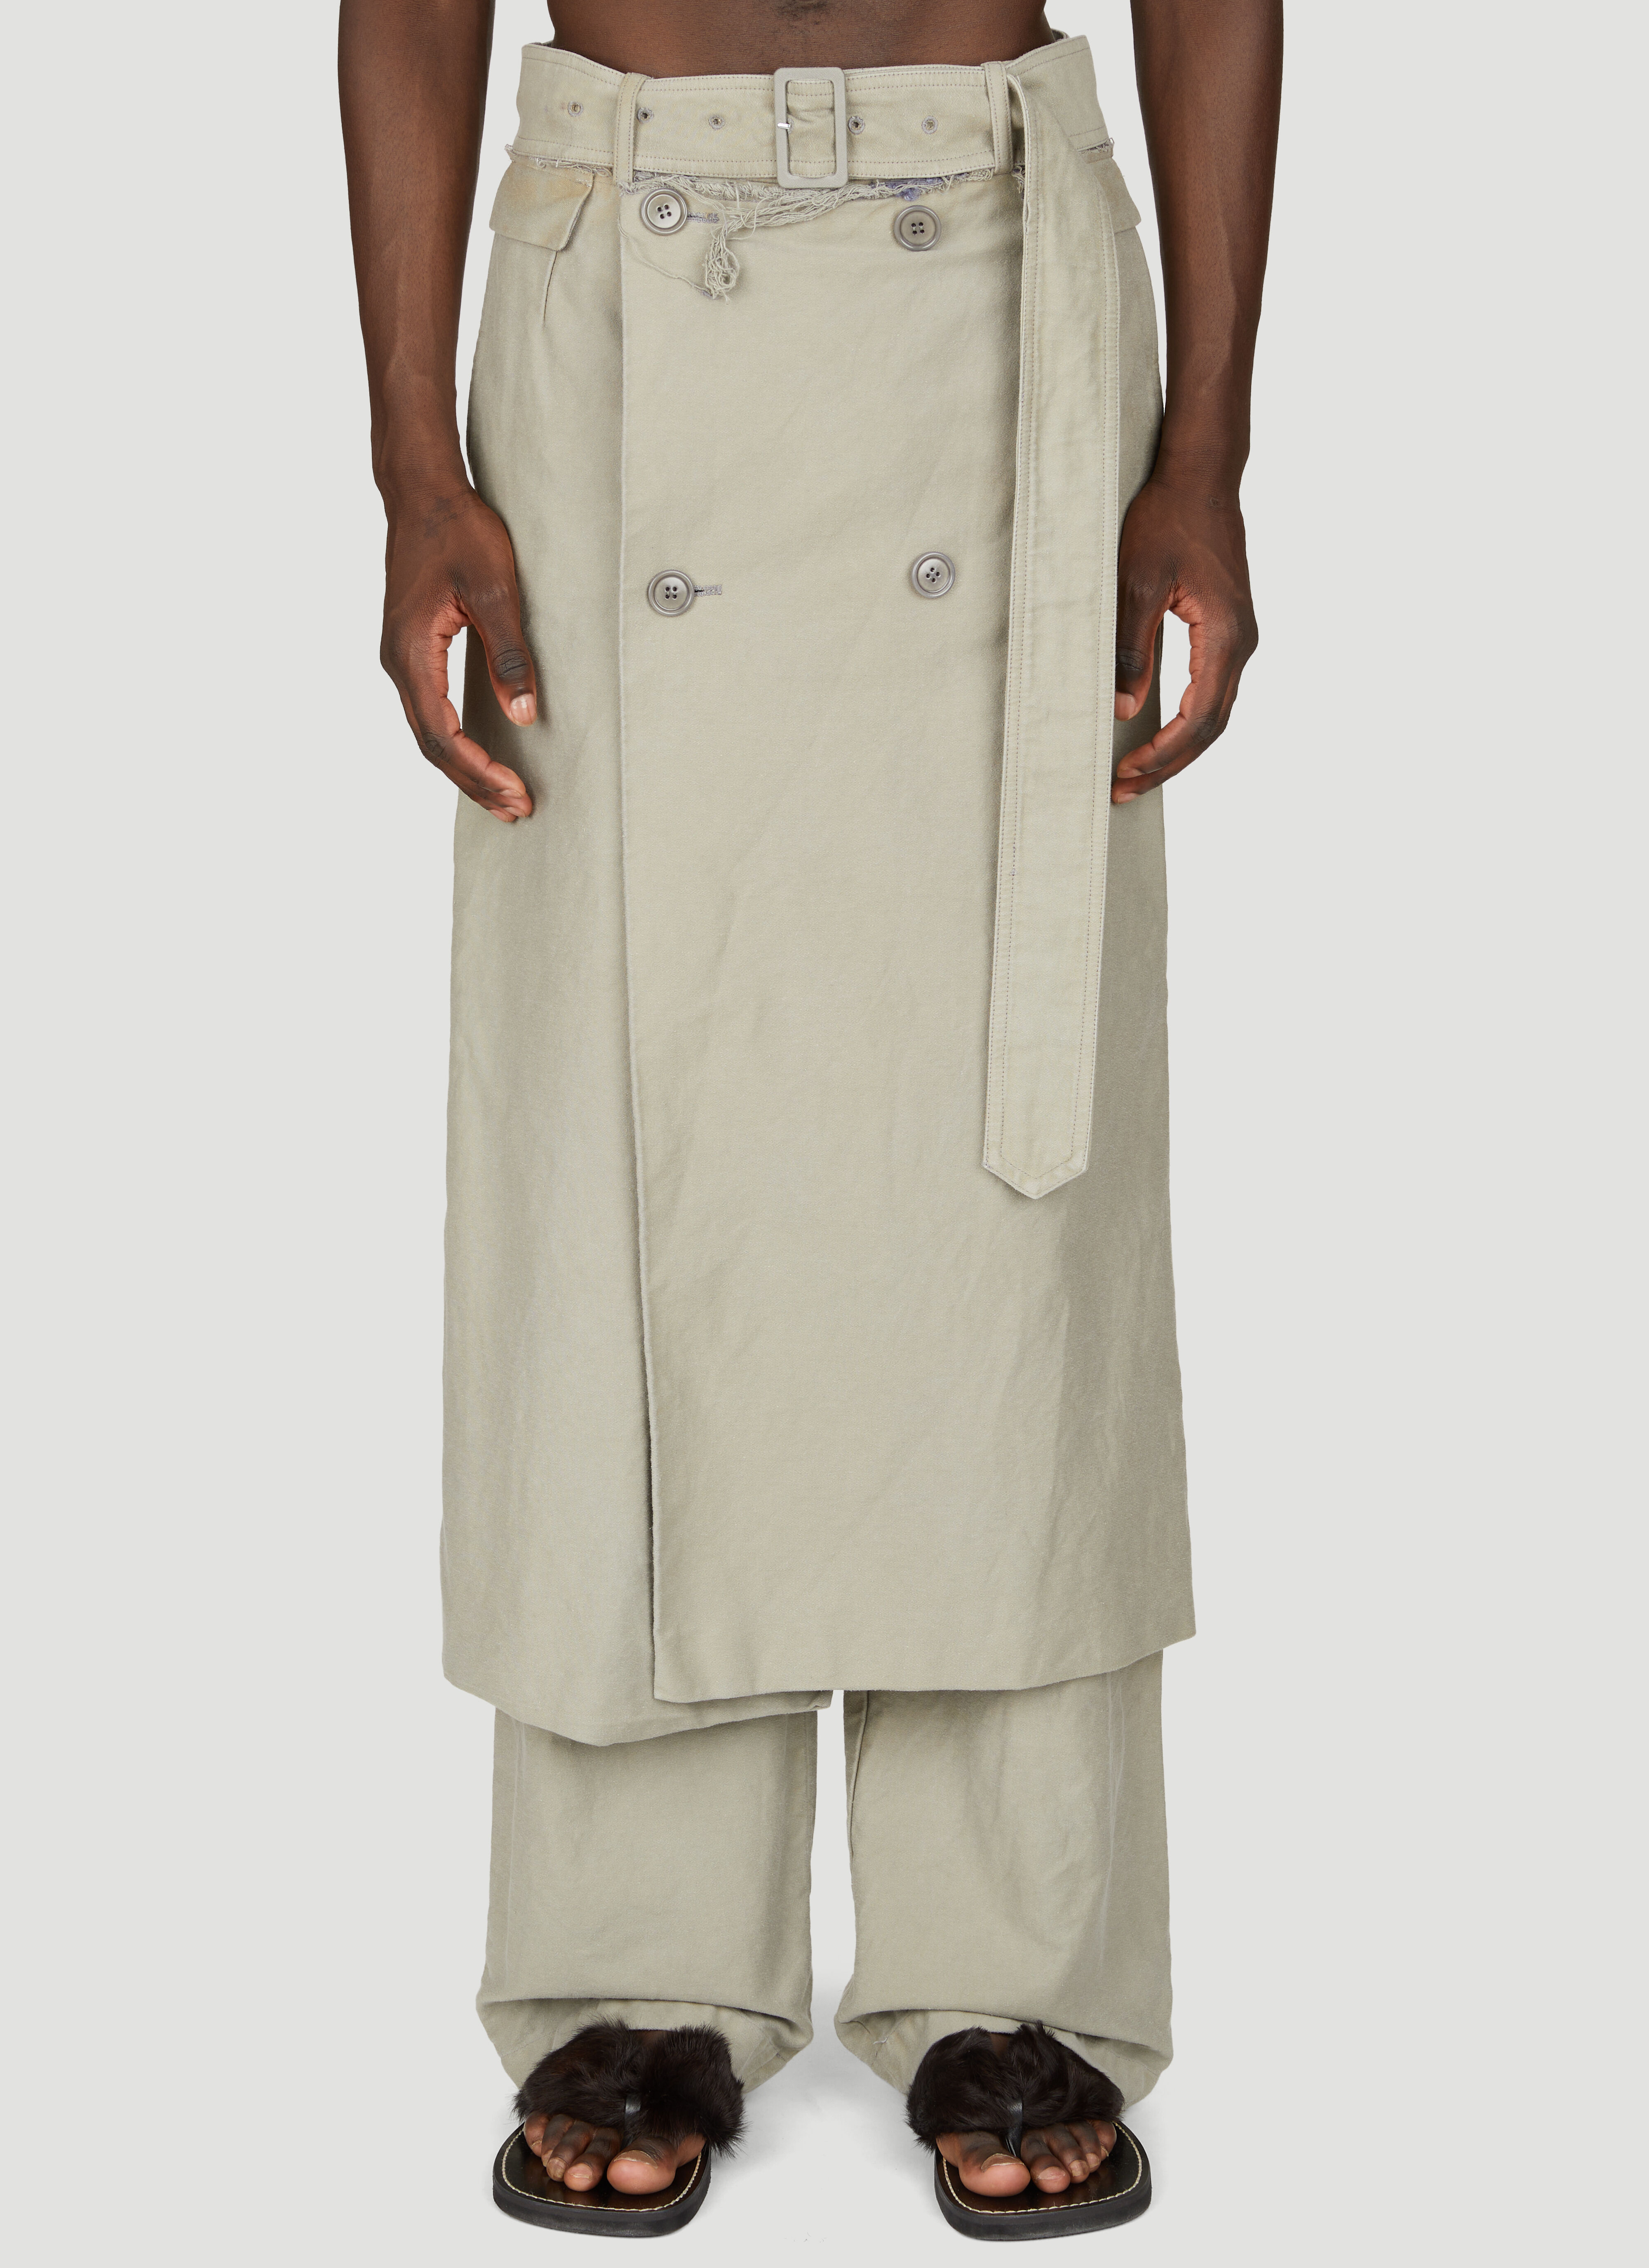 Dries Van Noten Tailored Wrap-Around Pants Grey dvn0156010